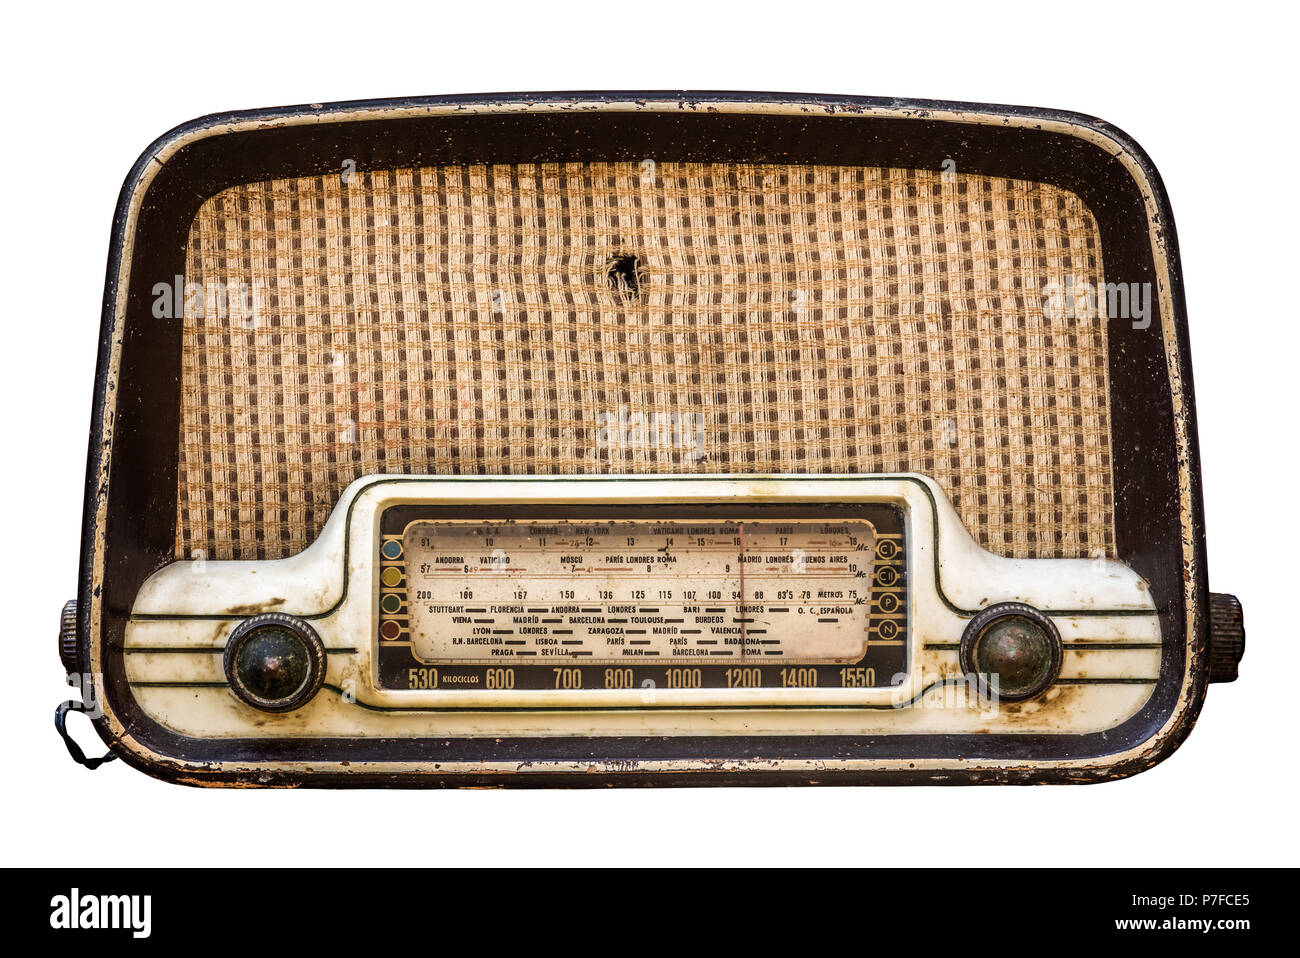 Isolierte Vintage Retro Radio in spanischer Sprache auf weißem Hintergrund  Stockfotografie - Alamy